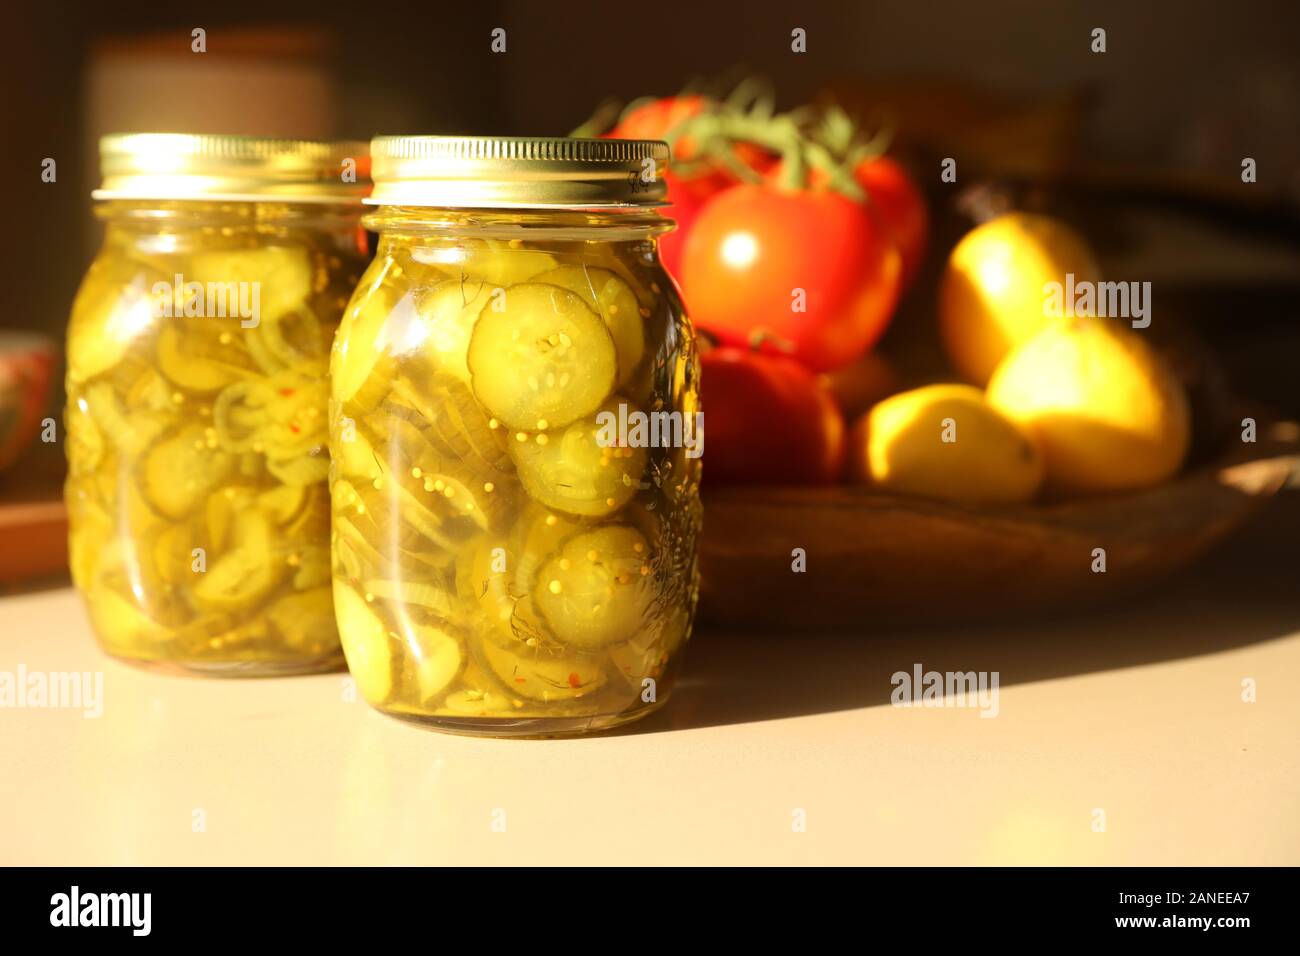 Eine geringe Tiefenschärfe still life style Komposition von zwei ungeöffnete versiegelte Gläser frisch hausgemachten Gurke Dill Pickles. Küche Objekte Stockfoto